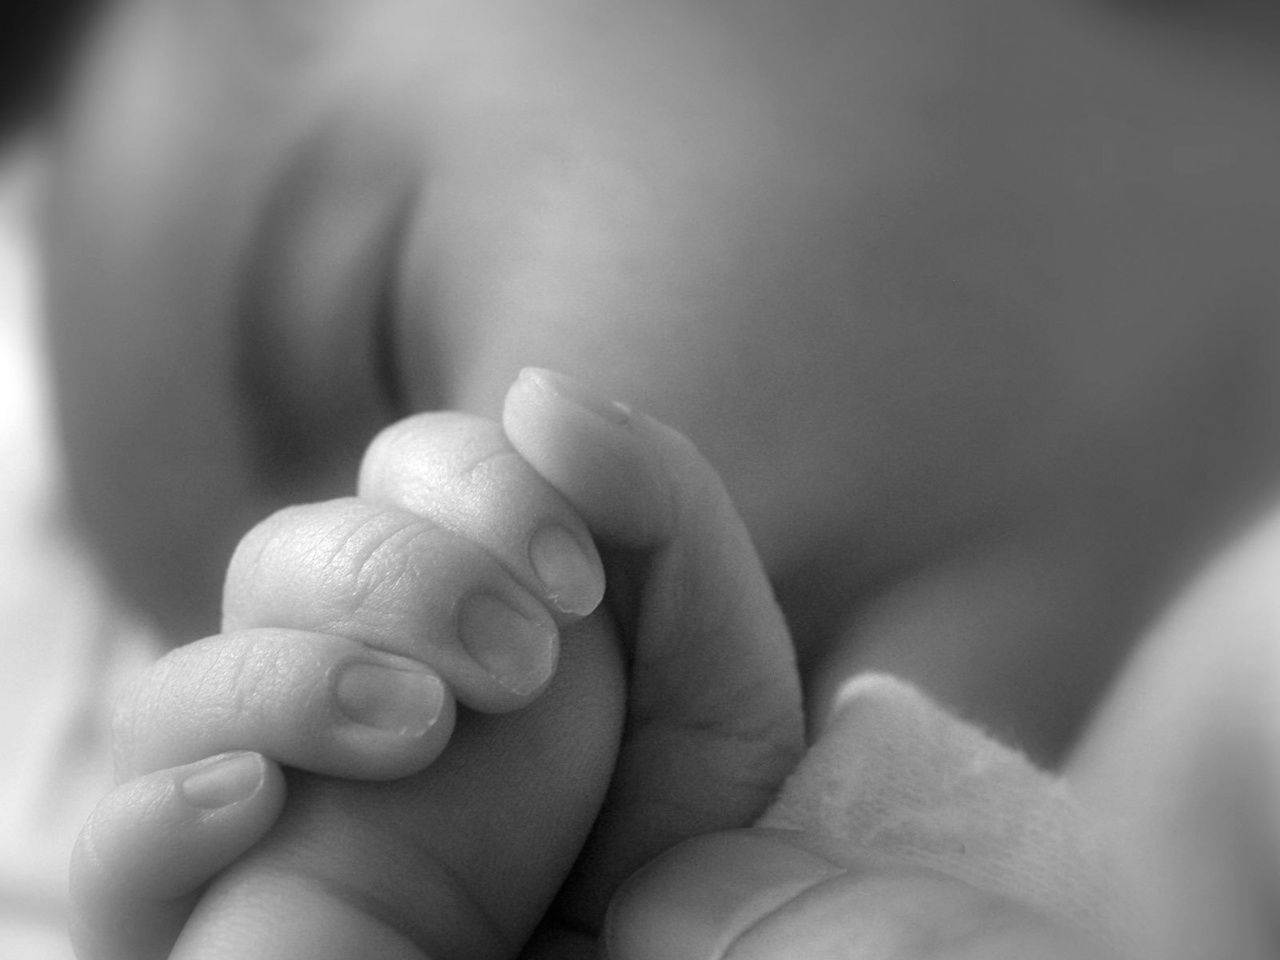 В Омской области в результате домашних родов скончался младенец. Об этом сообщила